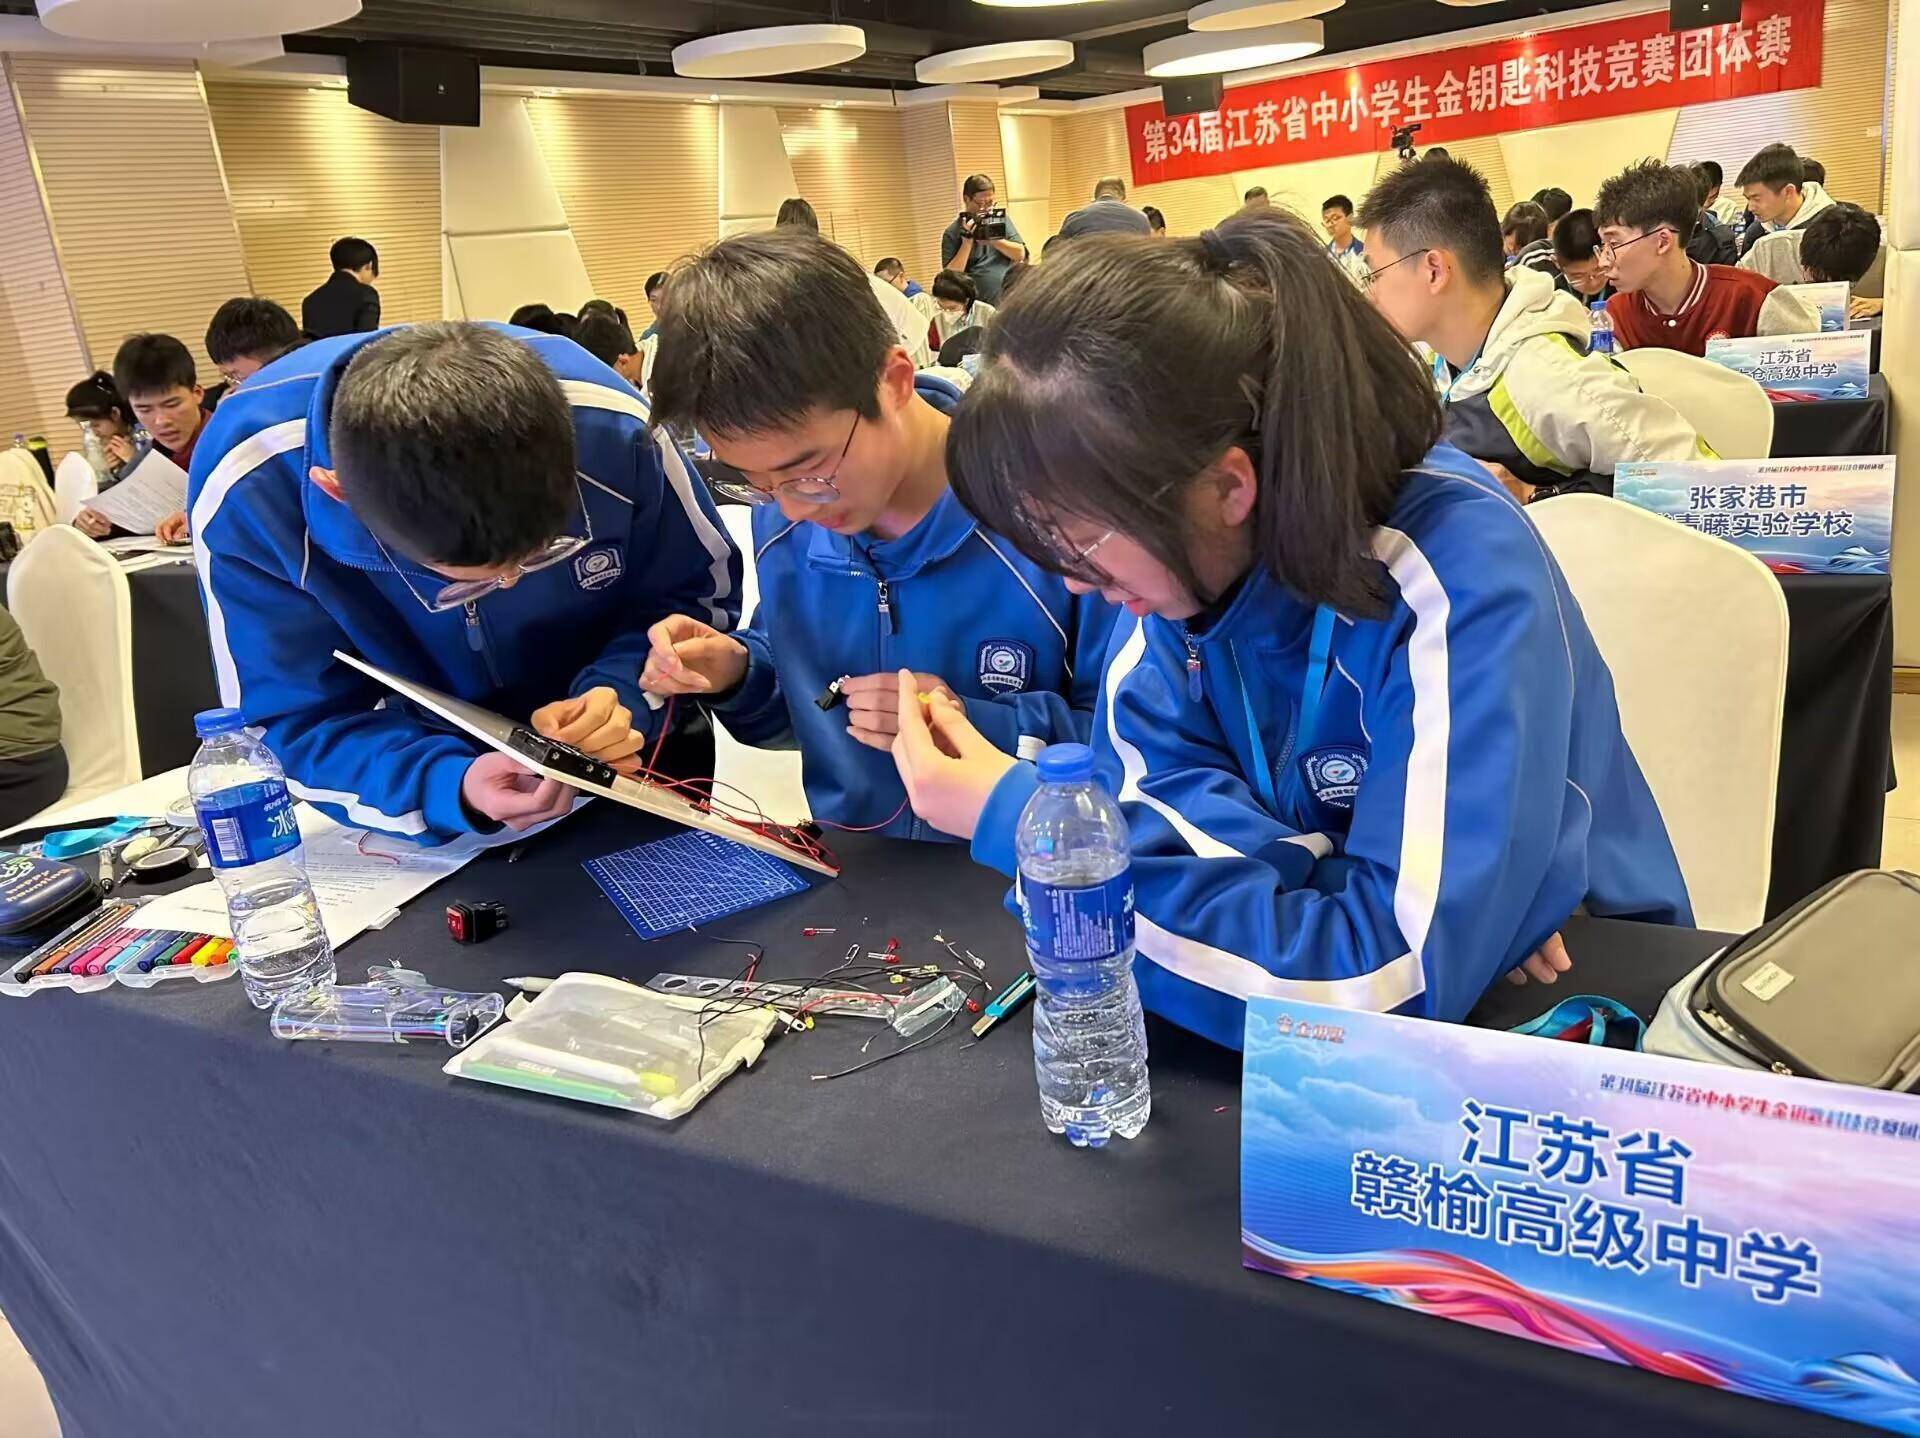 赣榆高级中学:省级科技竞赛夺冠